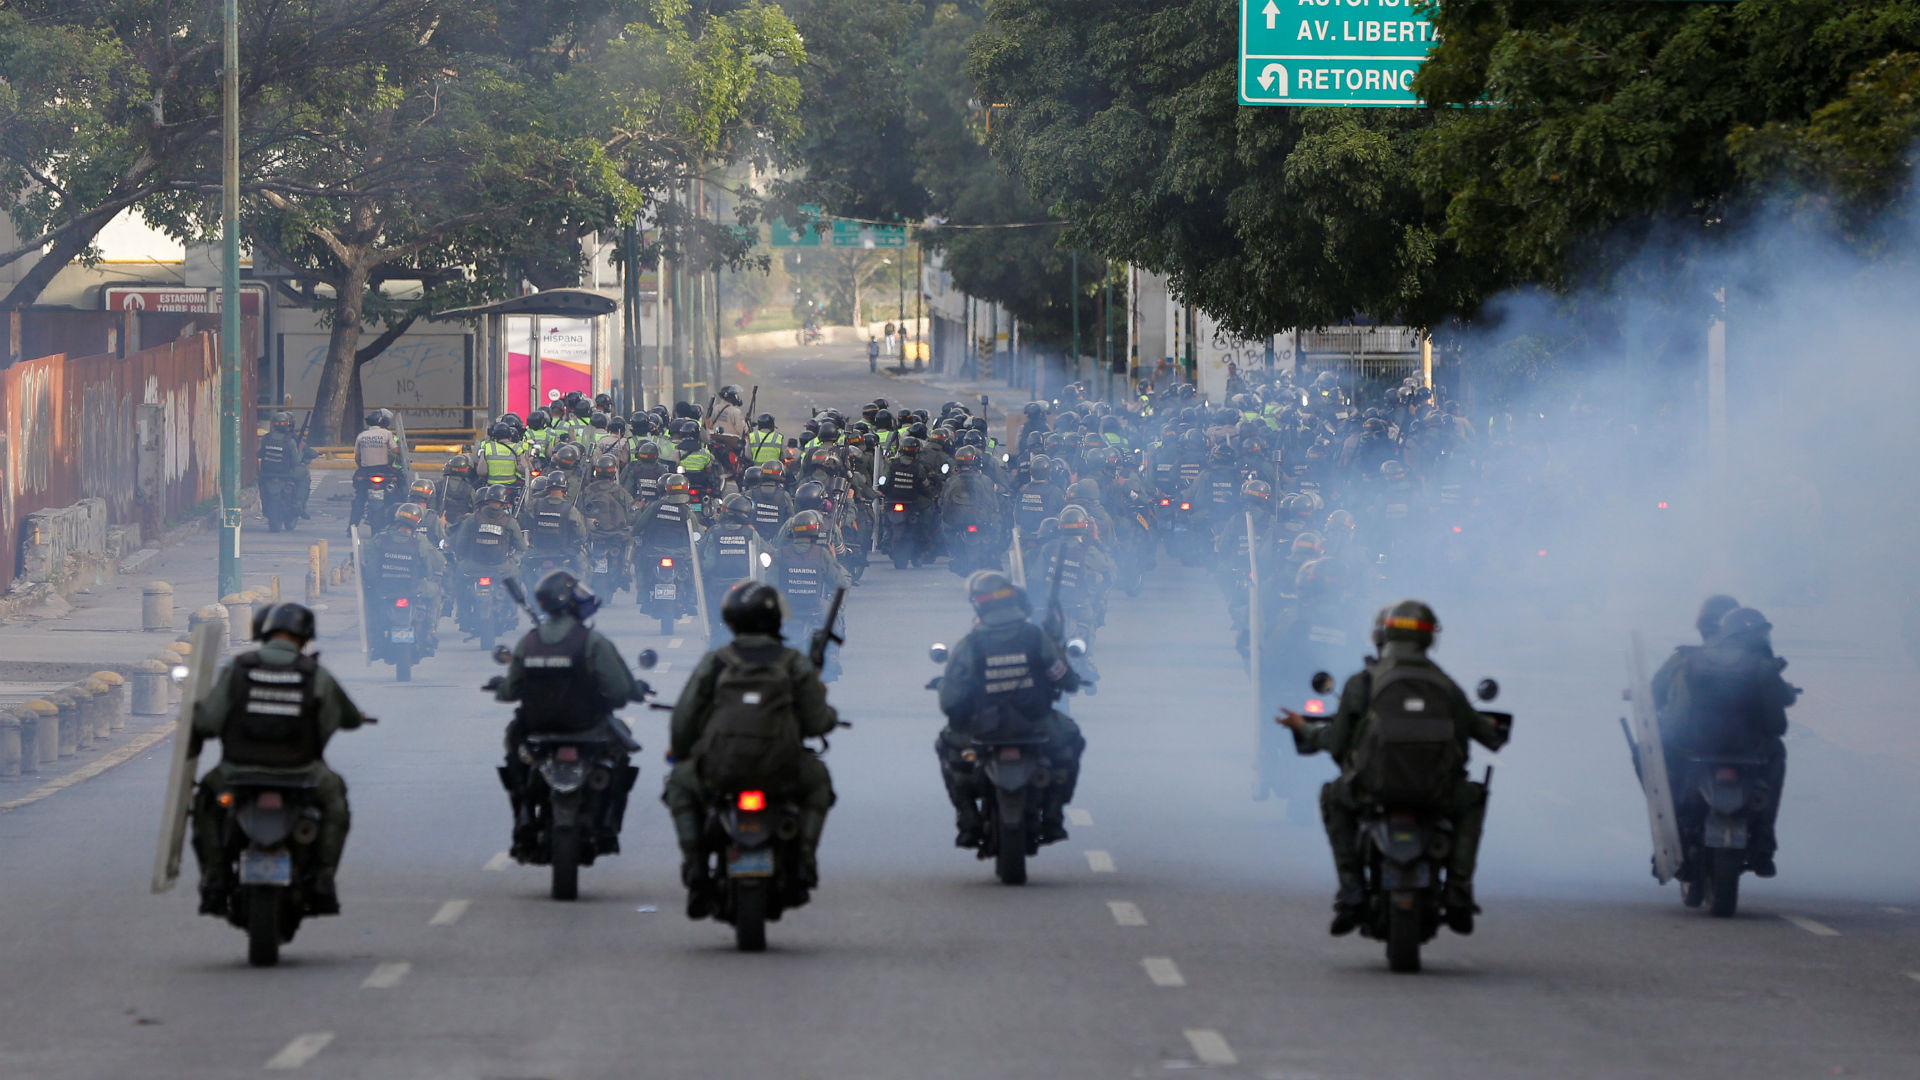 Grupos de civiles armados y la Guardia Nacional reprimen juntos en Venezuela